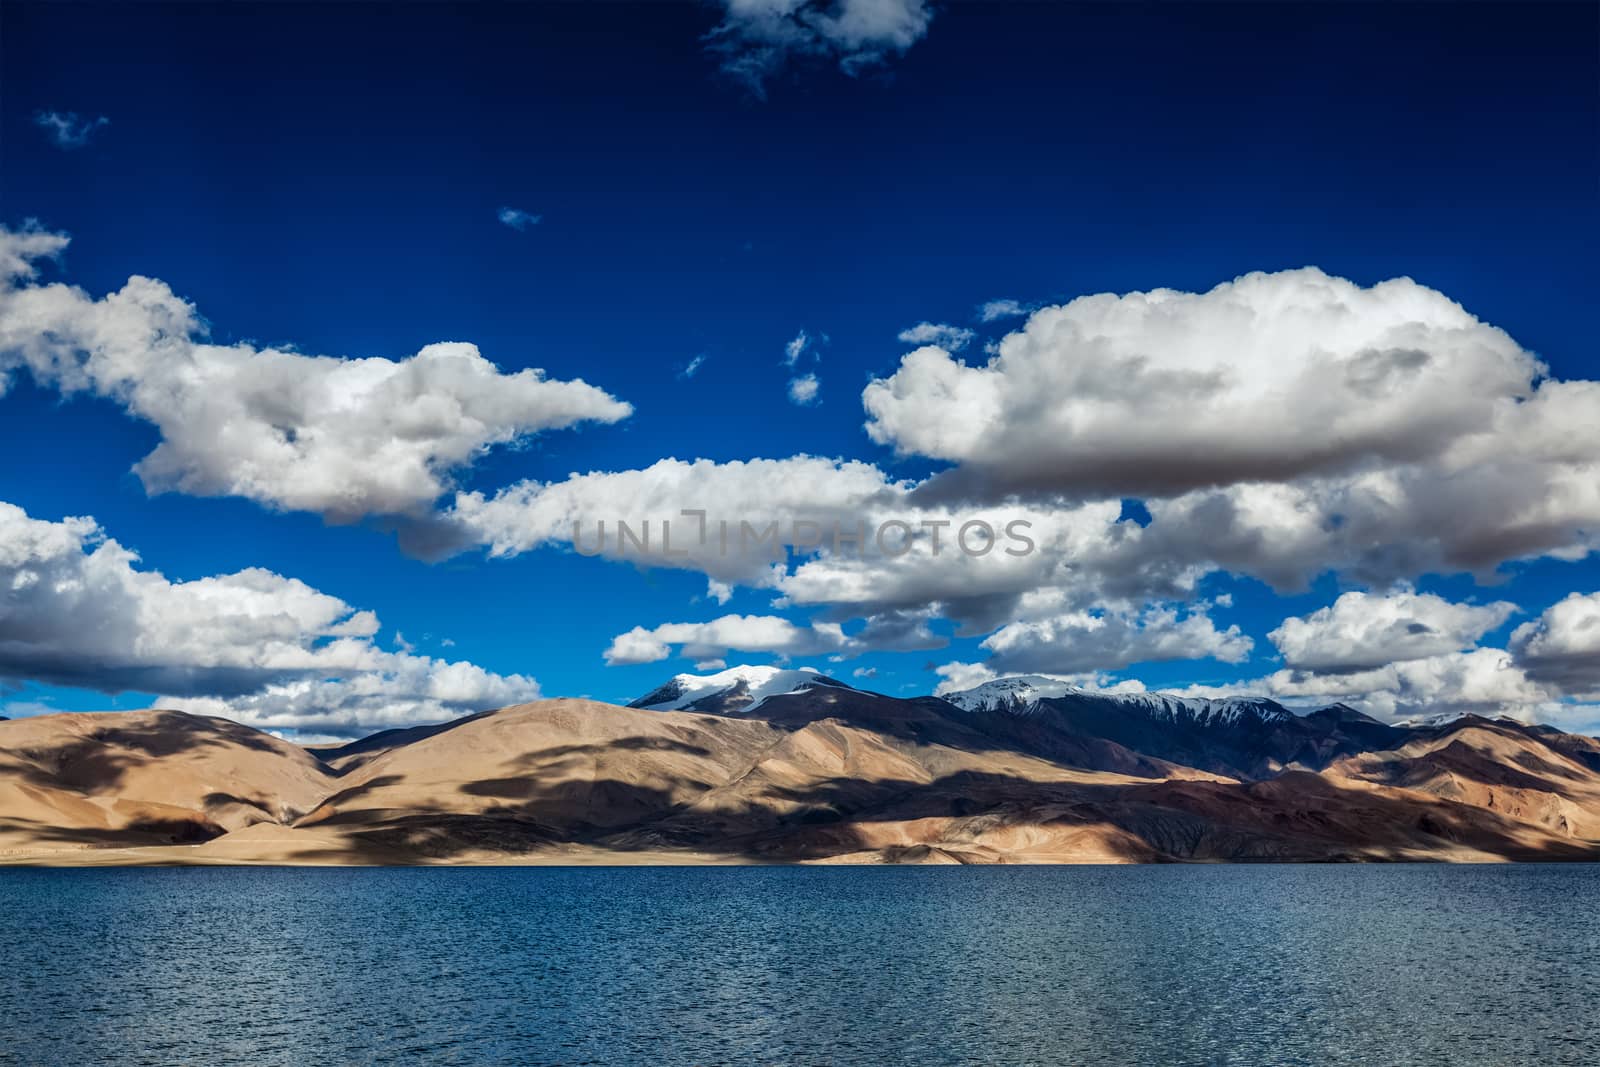 Tso Moriri, Ladakh by dimol